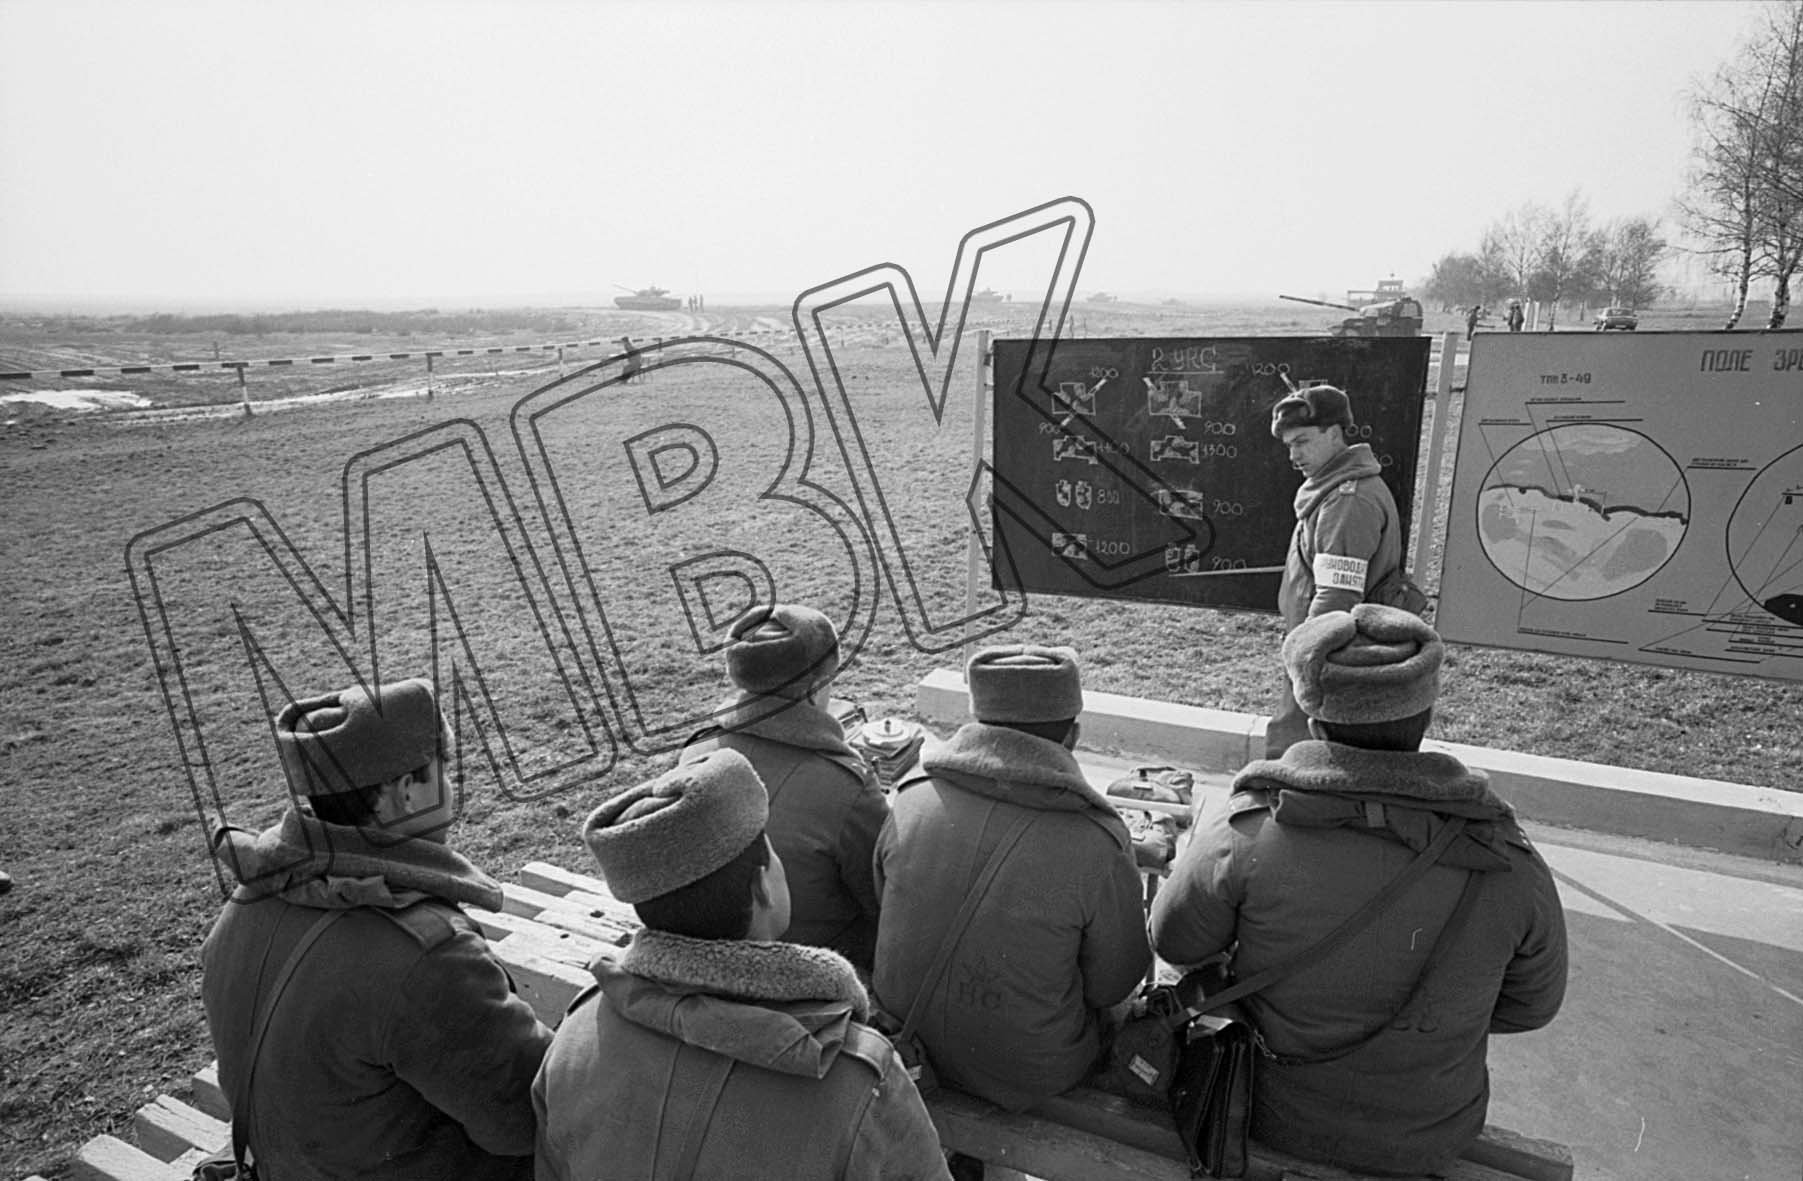 Fotografie: Schulung der Gefechtsbereitschaft in der Panzergarnison Altengrabow, 28. April 1992 (Museum Berlin-Karlshorst RR-P)